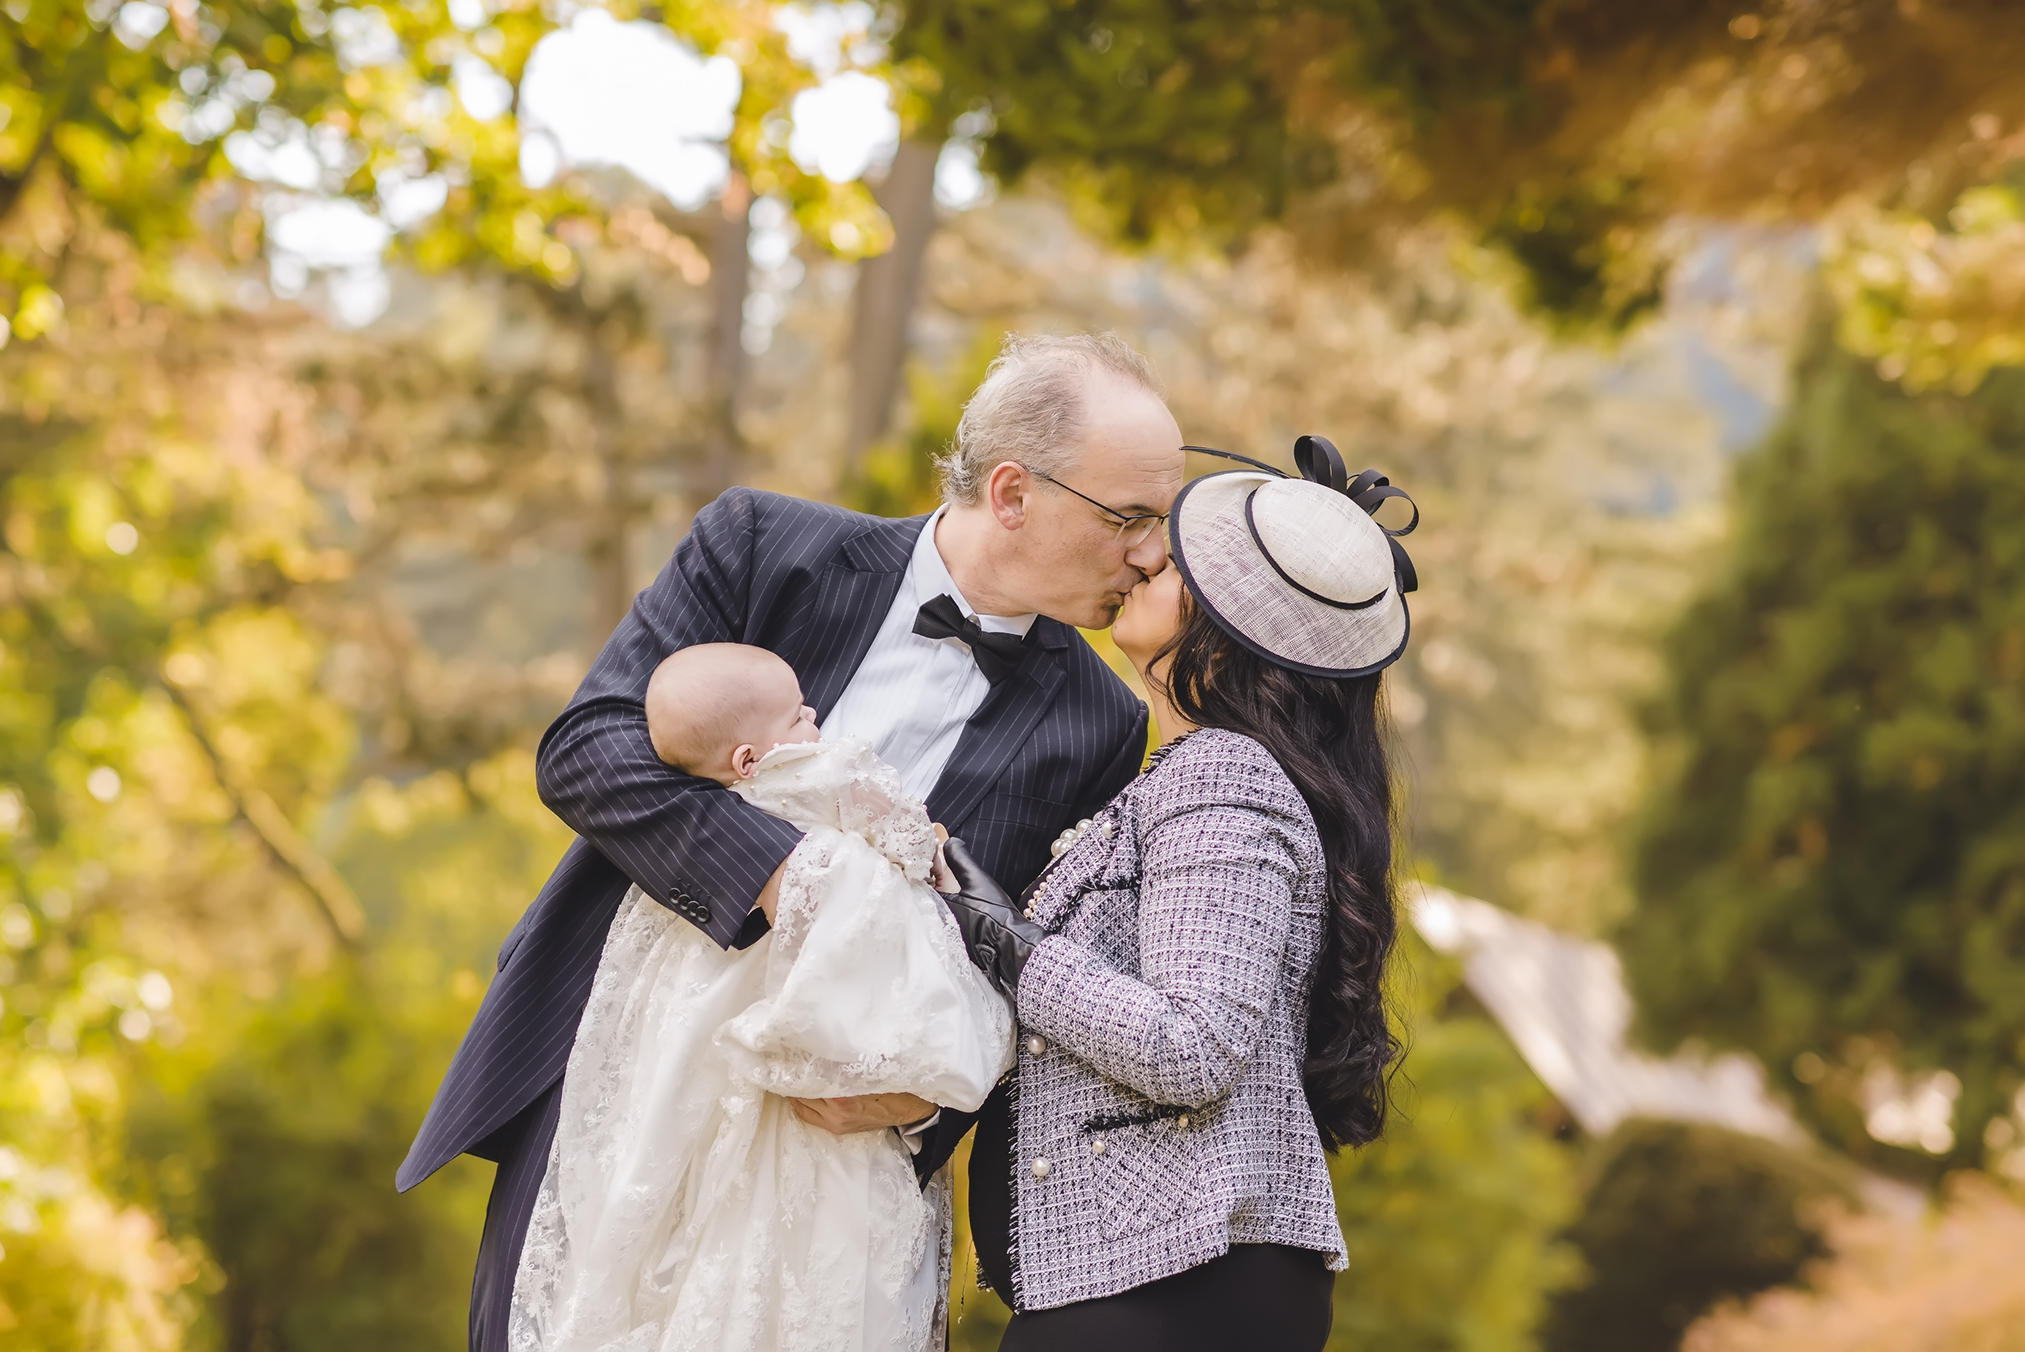 Ein Foto einer Familie mit Baby nach einer Taufzeremonie in Bad Wildbad. Das Baby trägt ein traditionelles weißes Taufkleid und posiert mit Mama und Papa für ein Familien-Shooting.